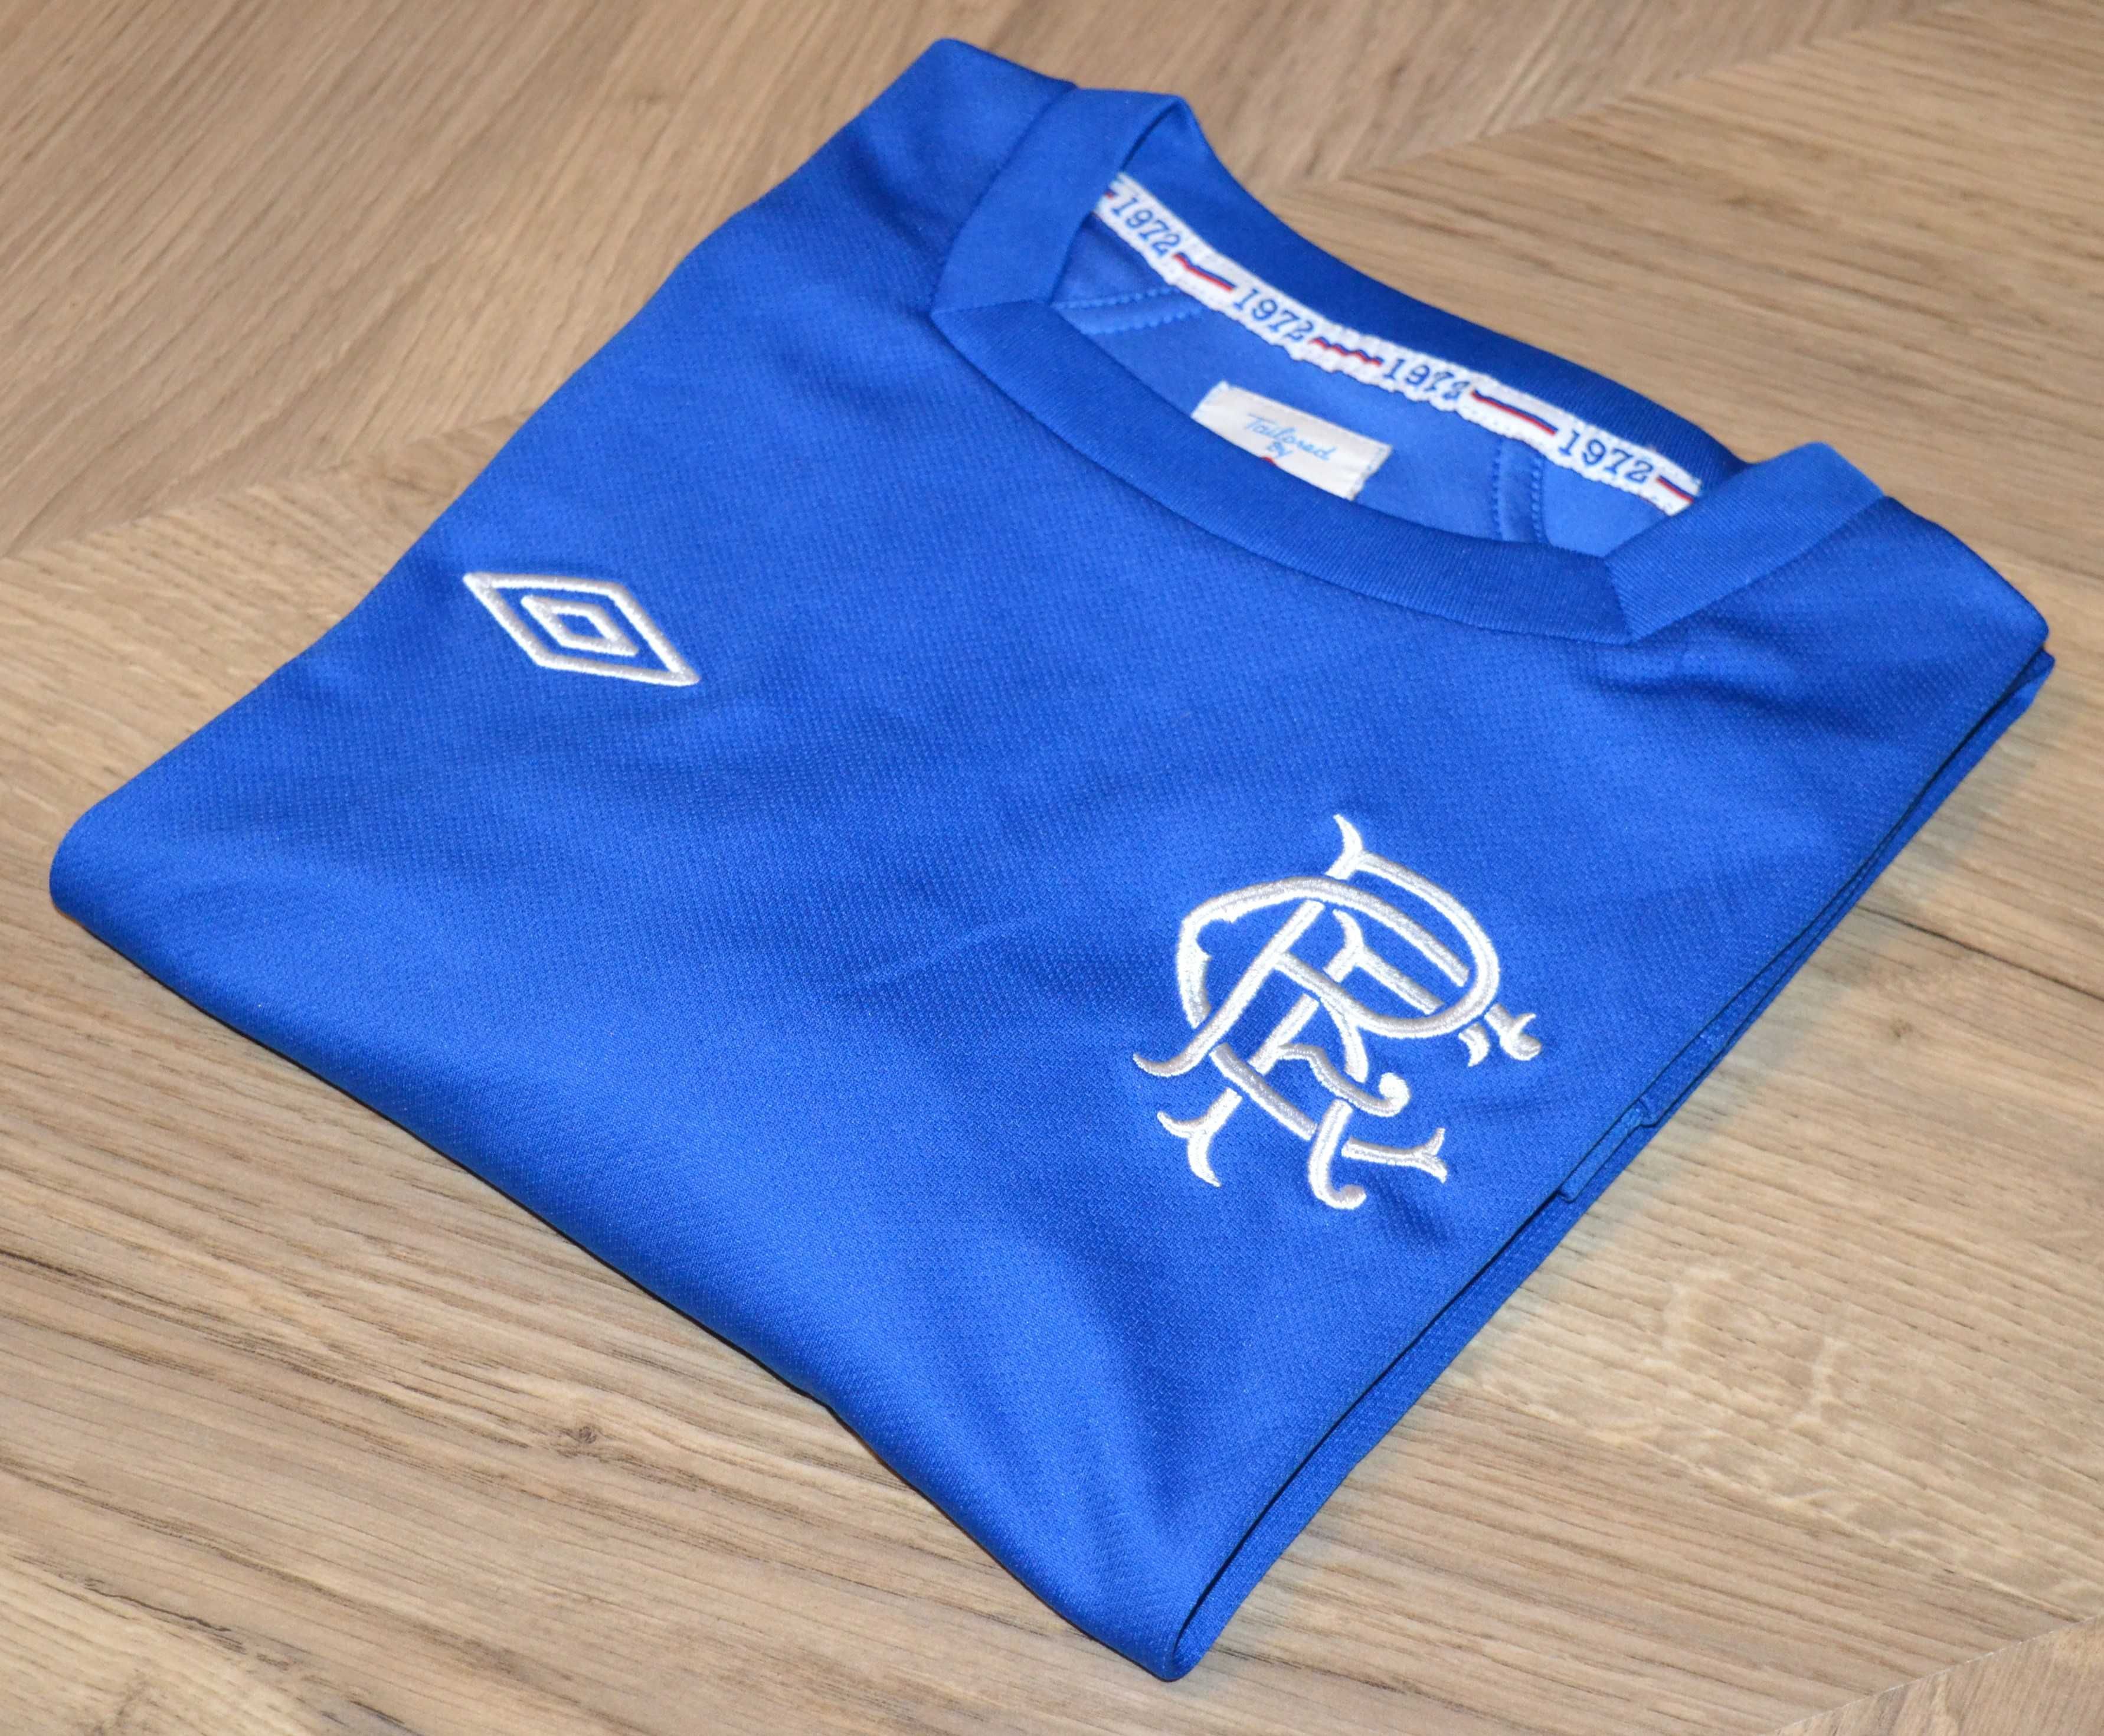 Umbro _ koszulka z rękawem Rangers F.C. sezon 2012/13 _ YXL _ 158cm